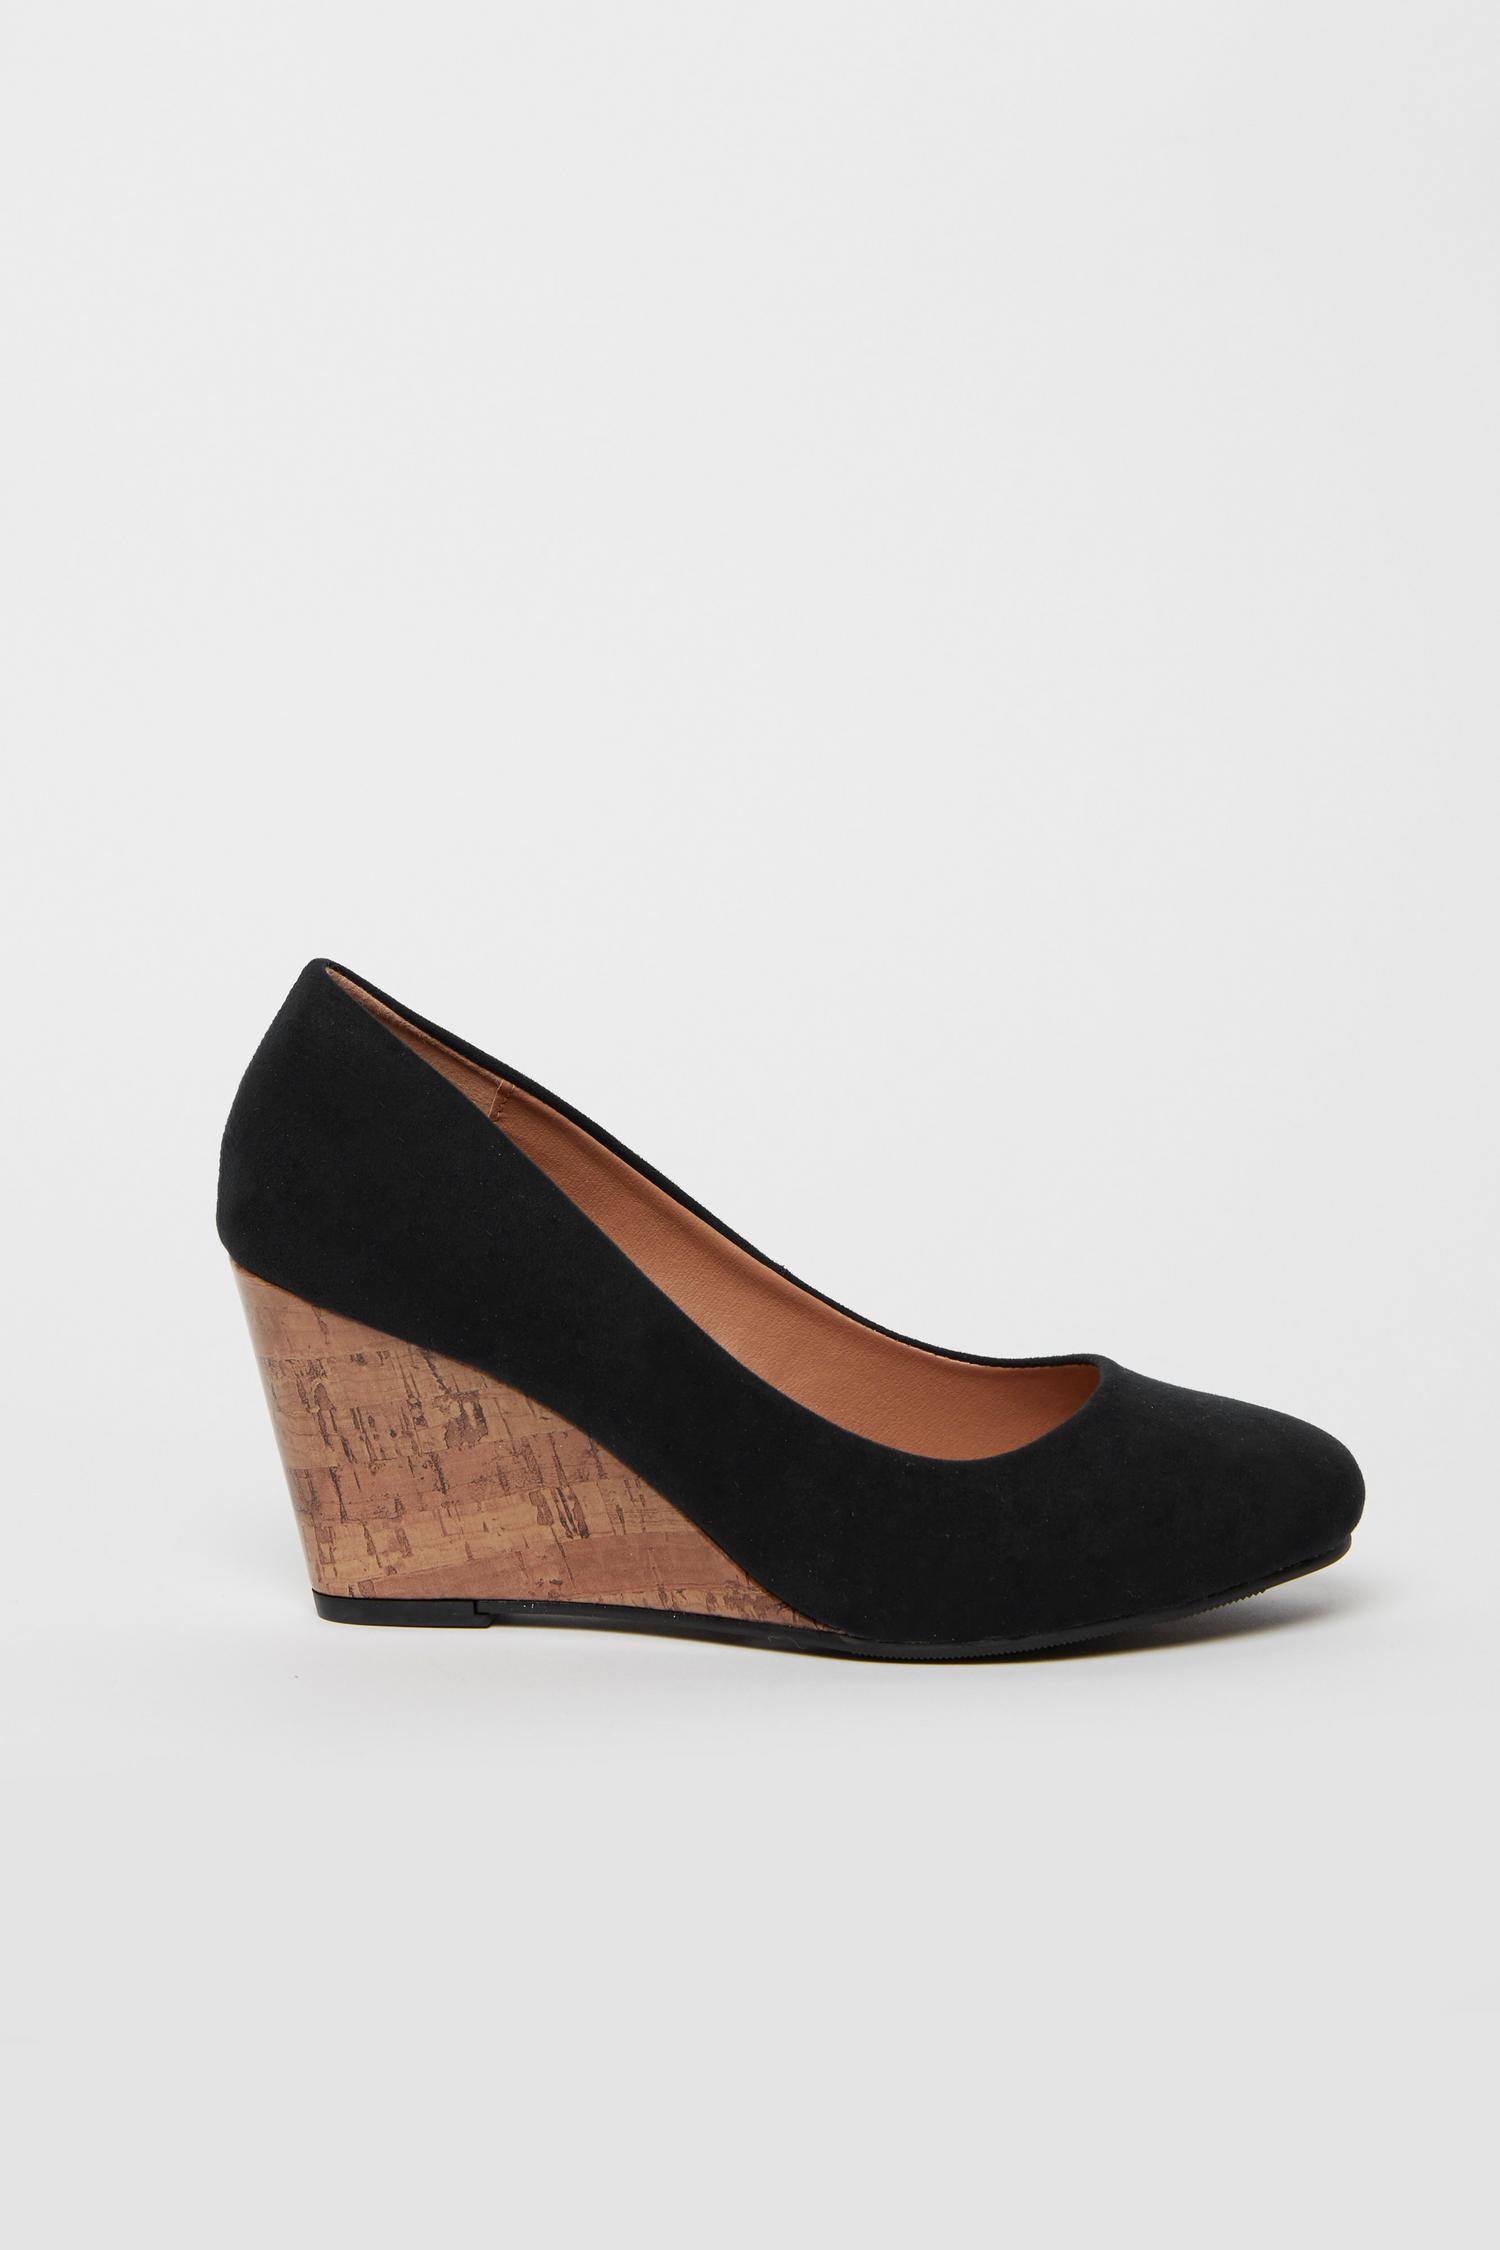 WIDE FIT Black Wedge Heeled Shoes | Wallis UK